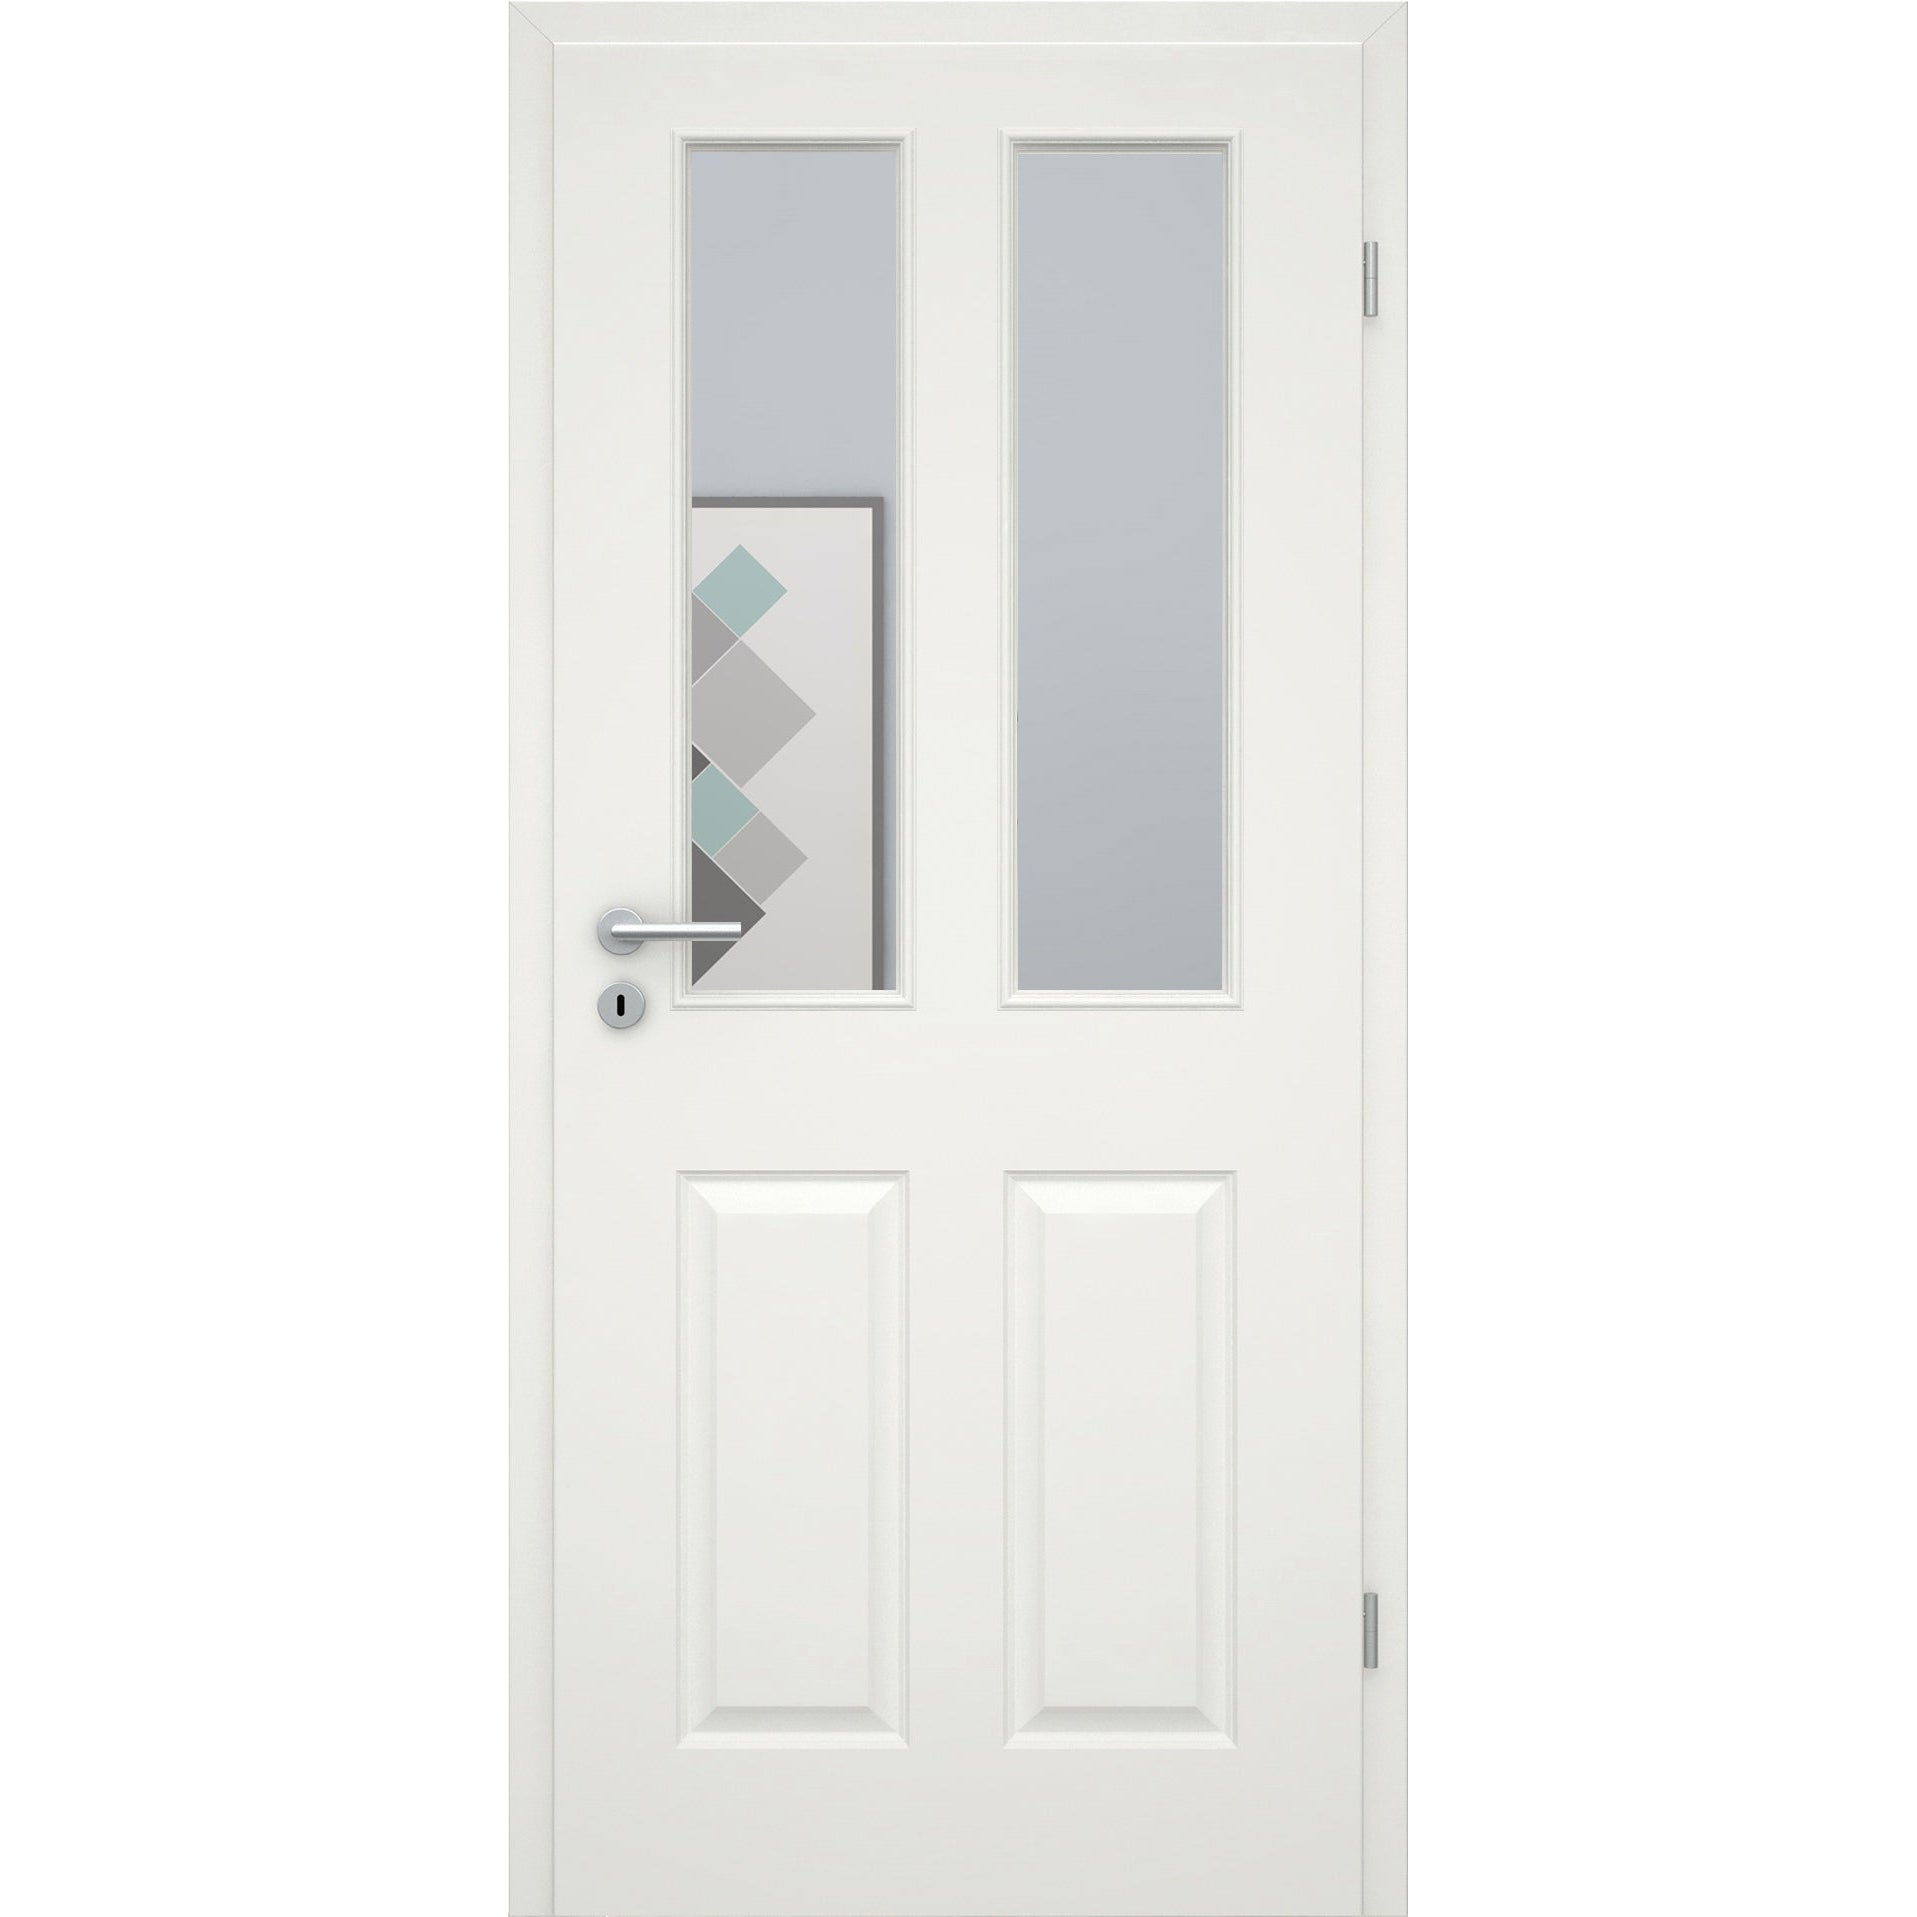 Zimmertür soft-weiß Stiltür mit 4 Kassetten und Lichtausschnitt Eckkante - Modell Stiltür K41LA2